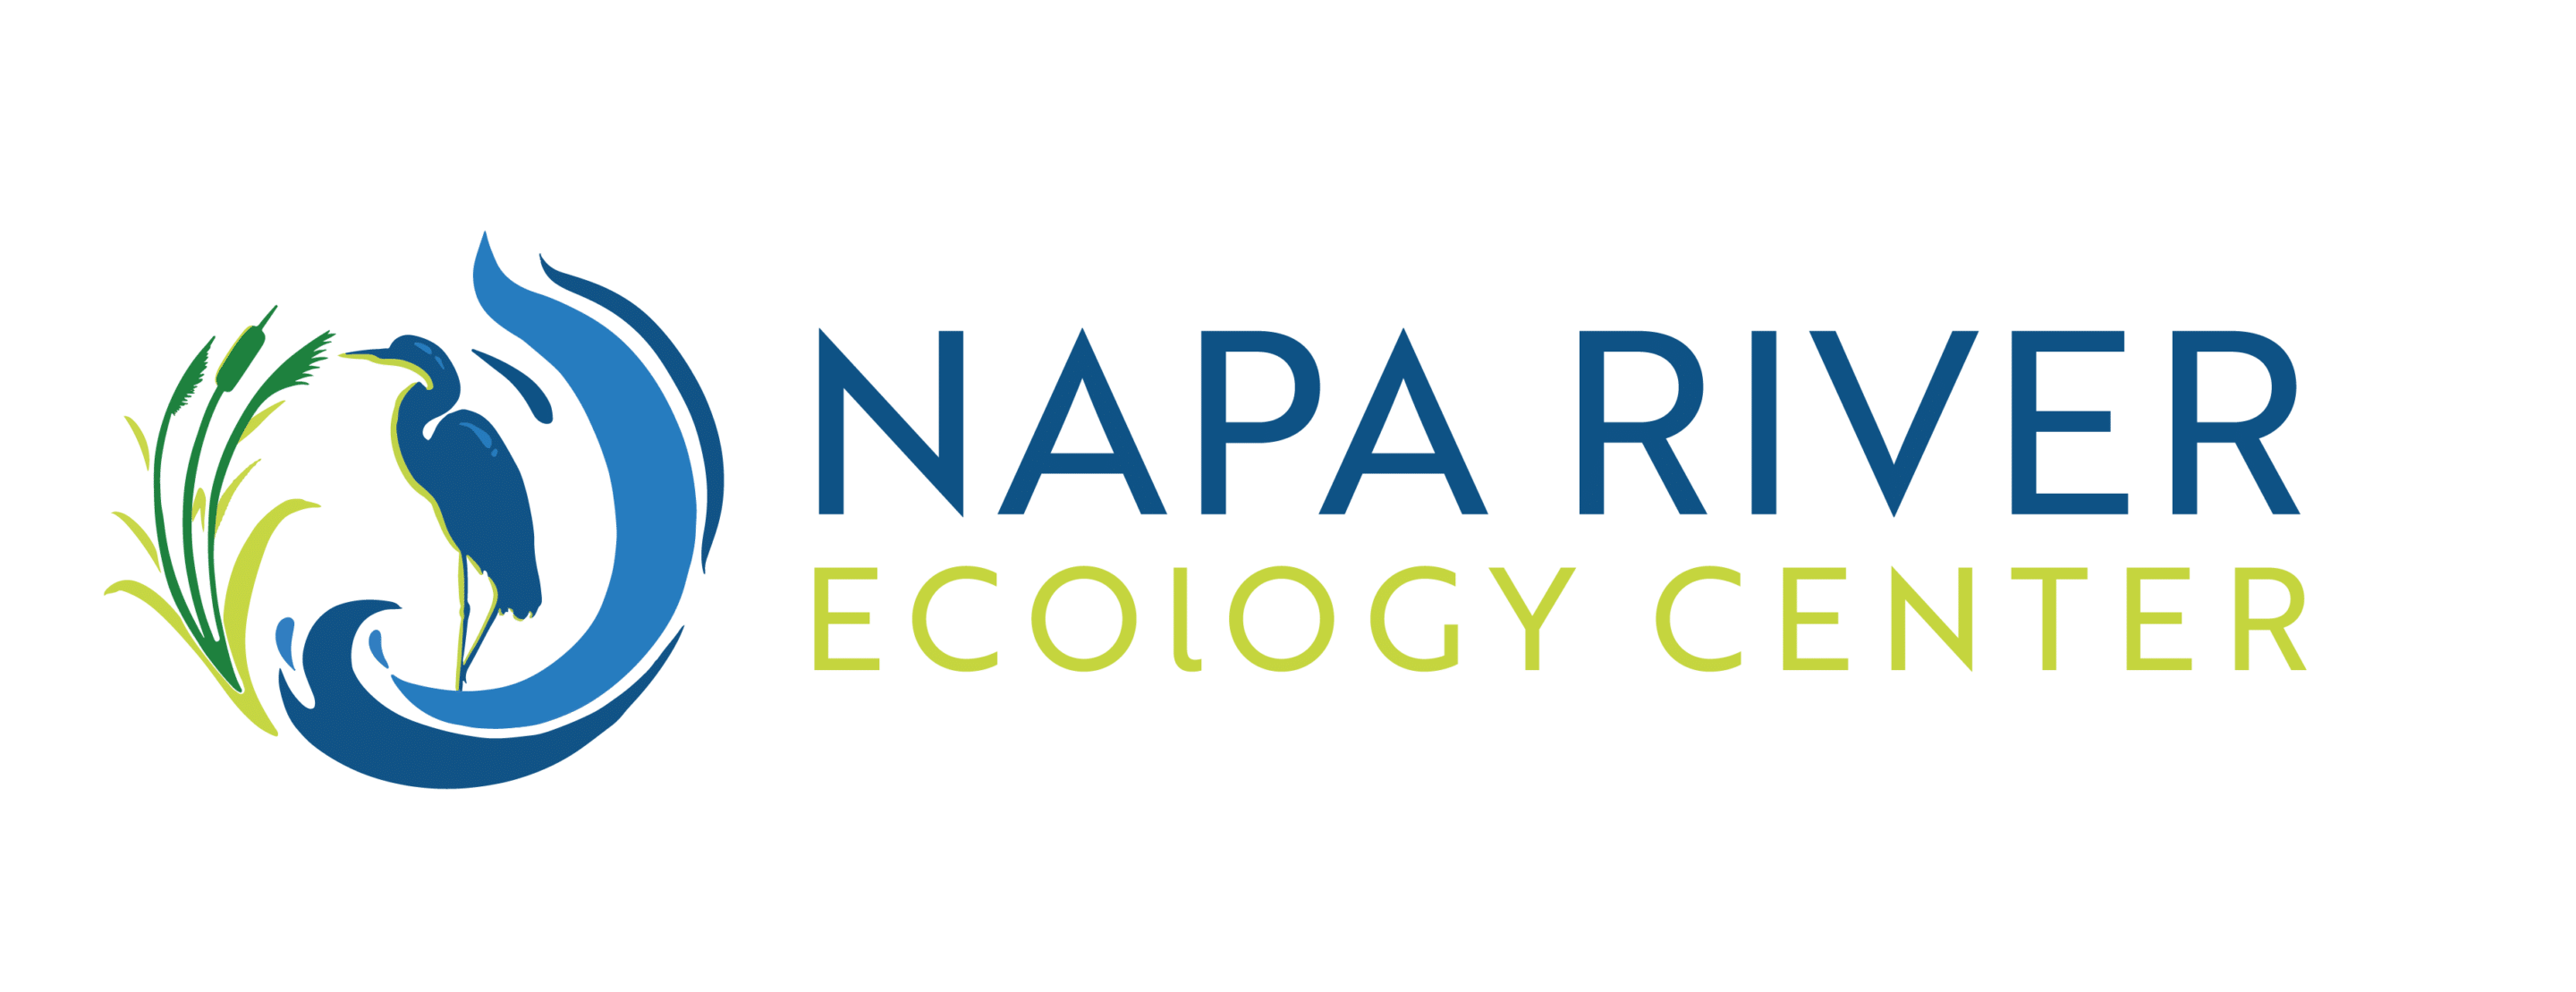 Napa River Ecology Center Logo